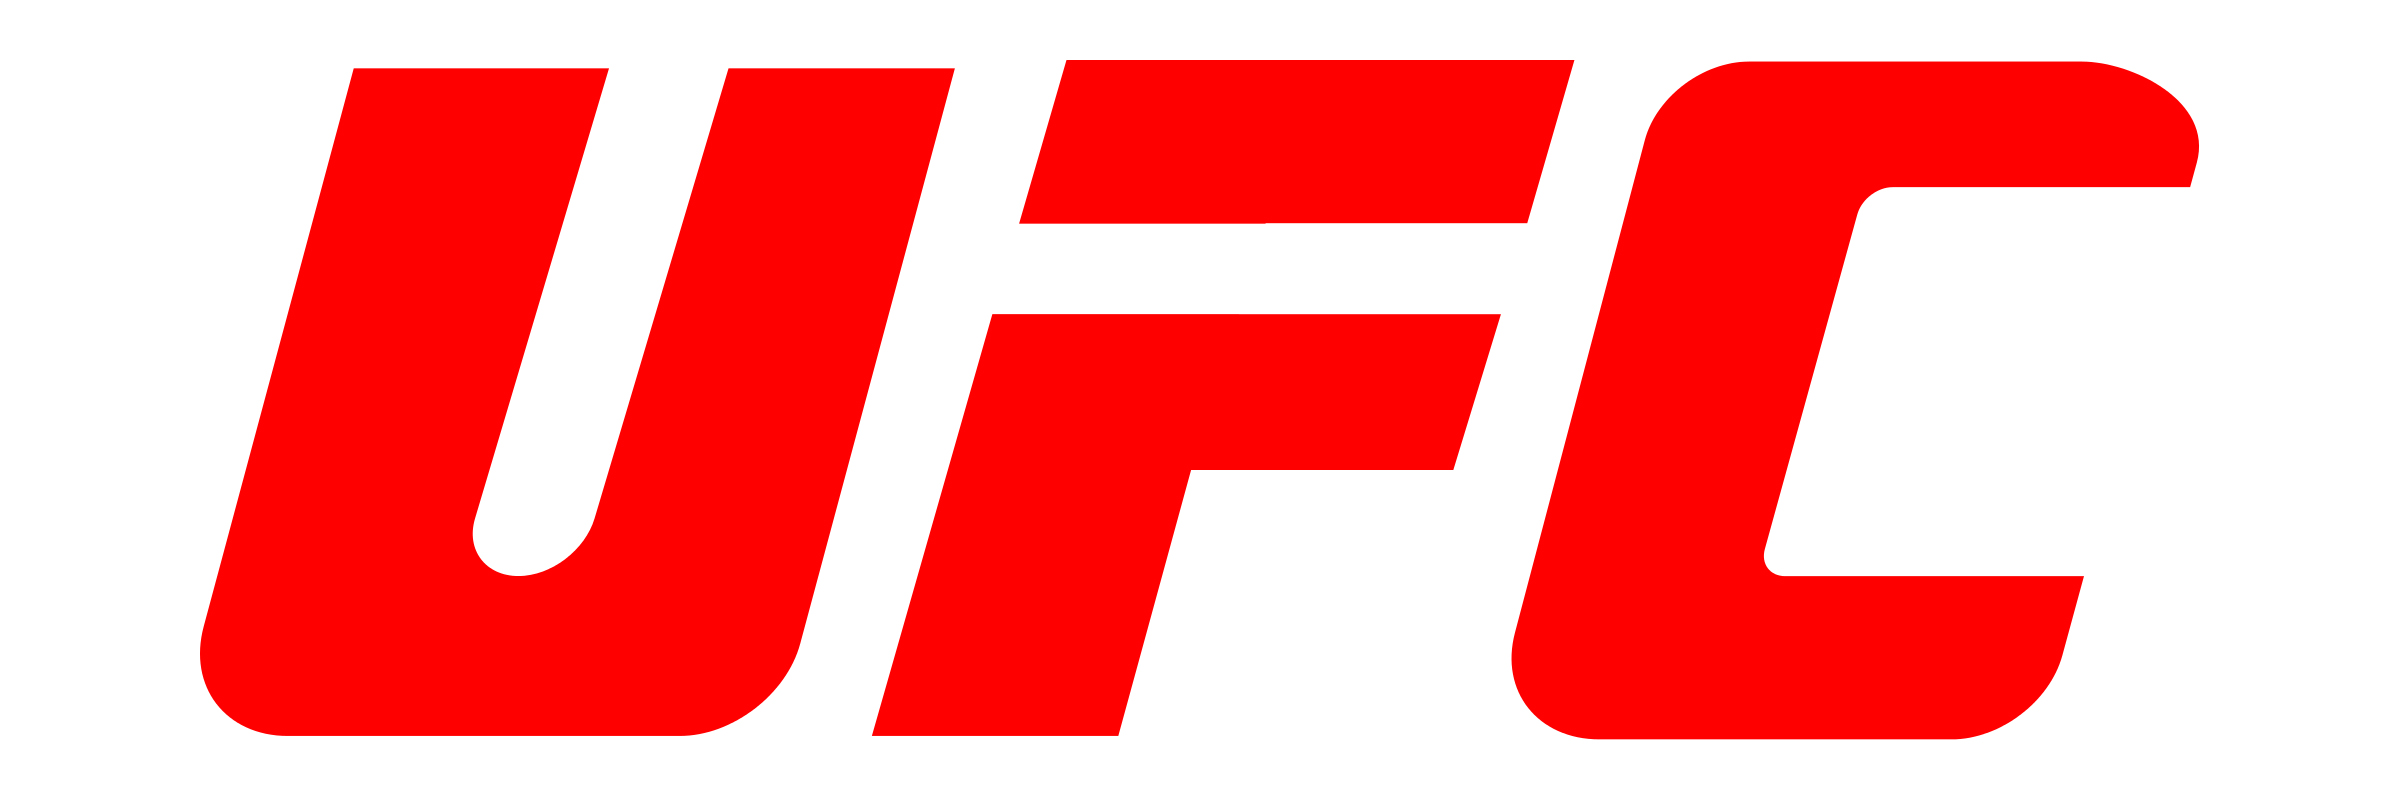 Ufc Logos